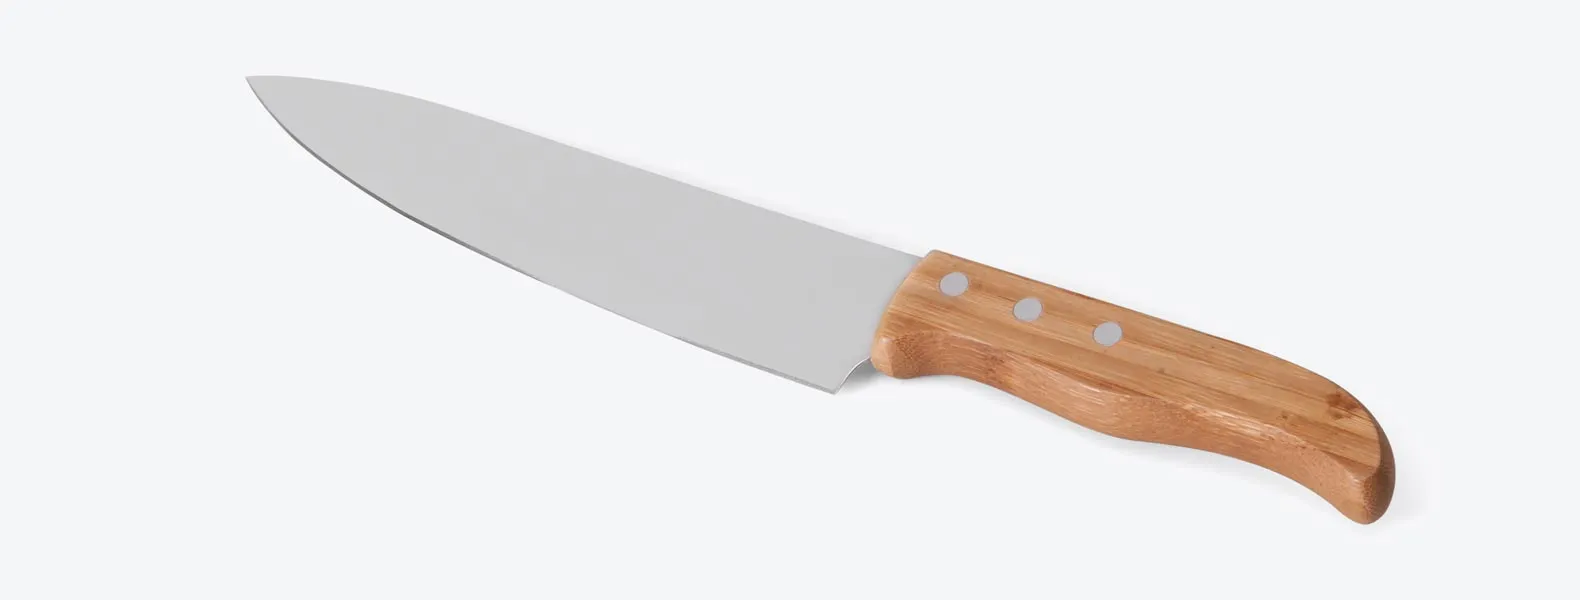 Conjunto de Faca em bambu/Aço Inox. Acompanha faca 8'', faca Santoku e garfo em bambu/Inox. Como cortesia, na faca 8 fazemos uma gravação com os cortes do boi.